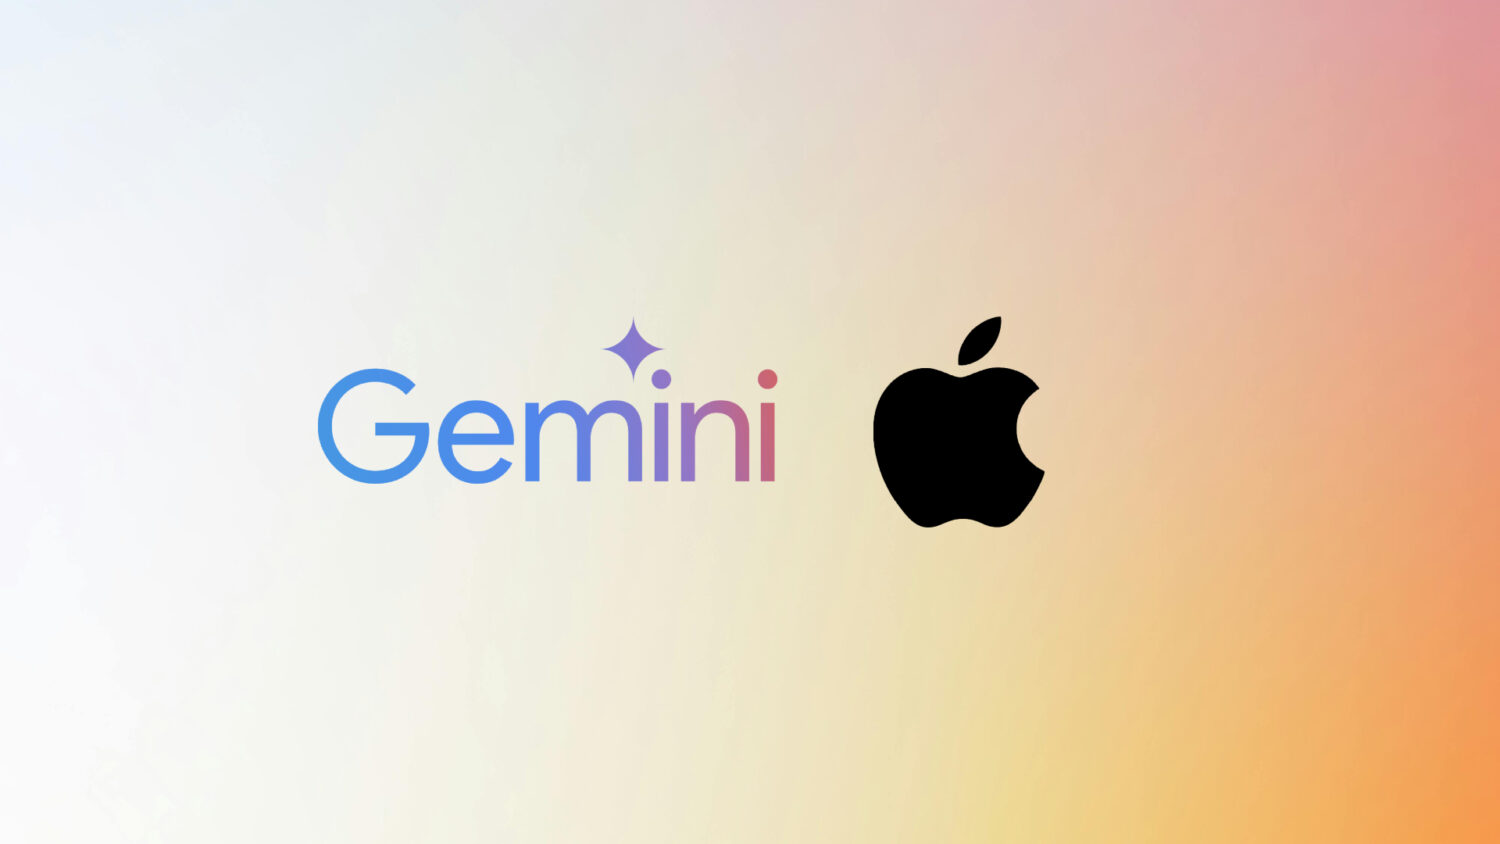 gemini apple iphone